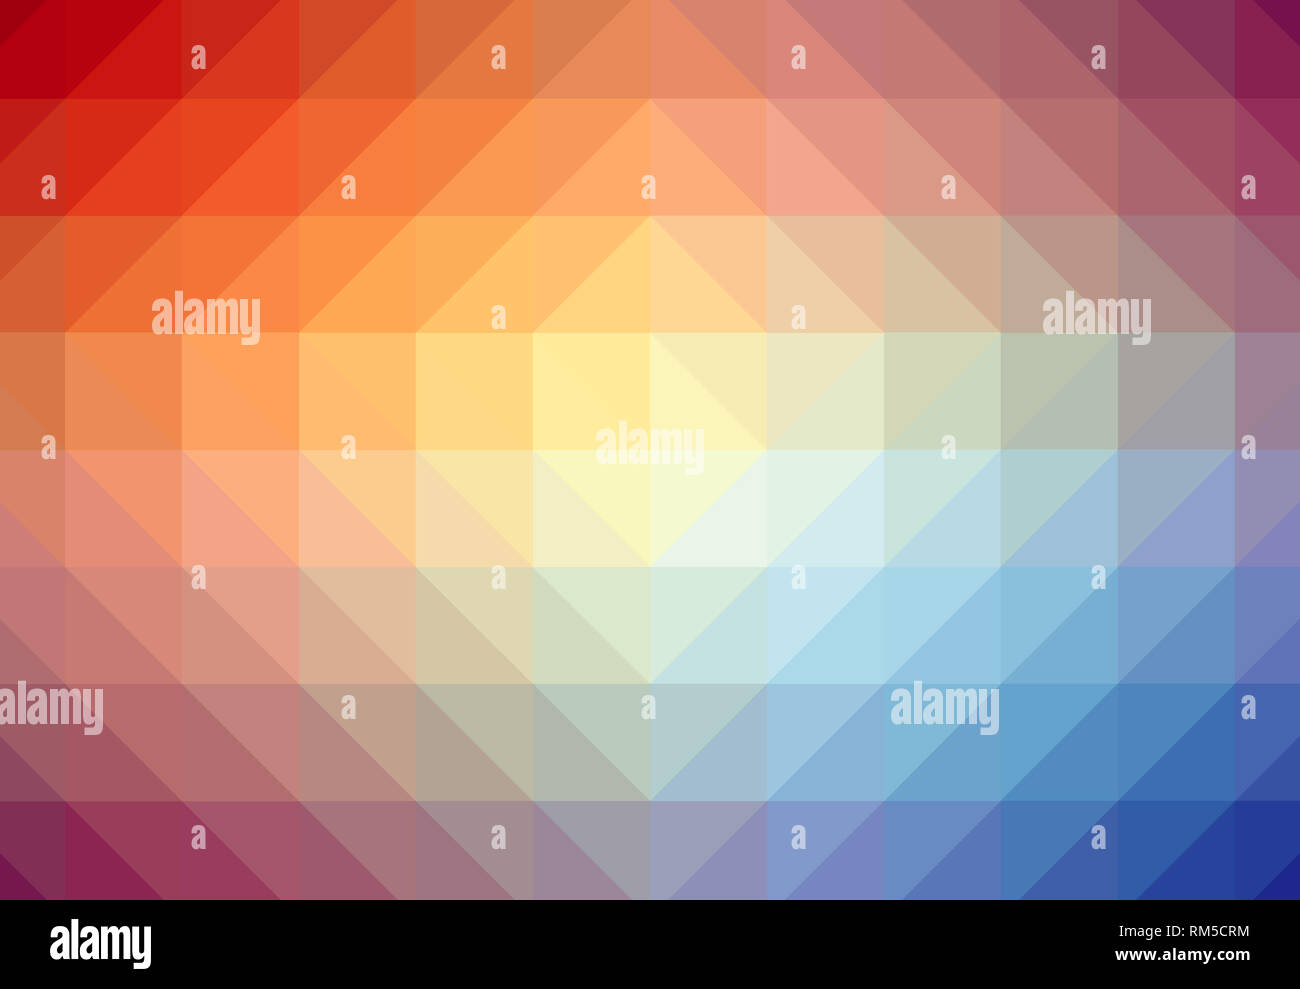 Farbenfroher abstrakter geometrischer Hintergrund mit rotem und blauem Farbverlauf. Digitaler Kristallwelleffekt. Stockfoto